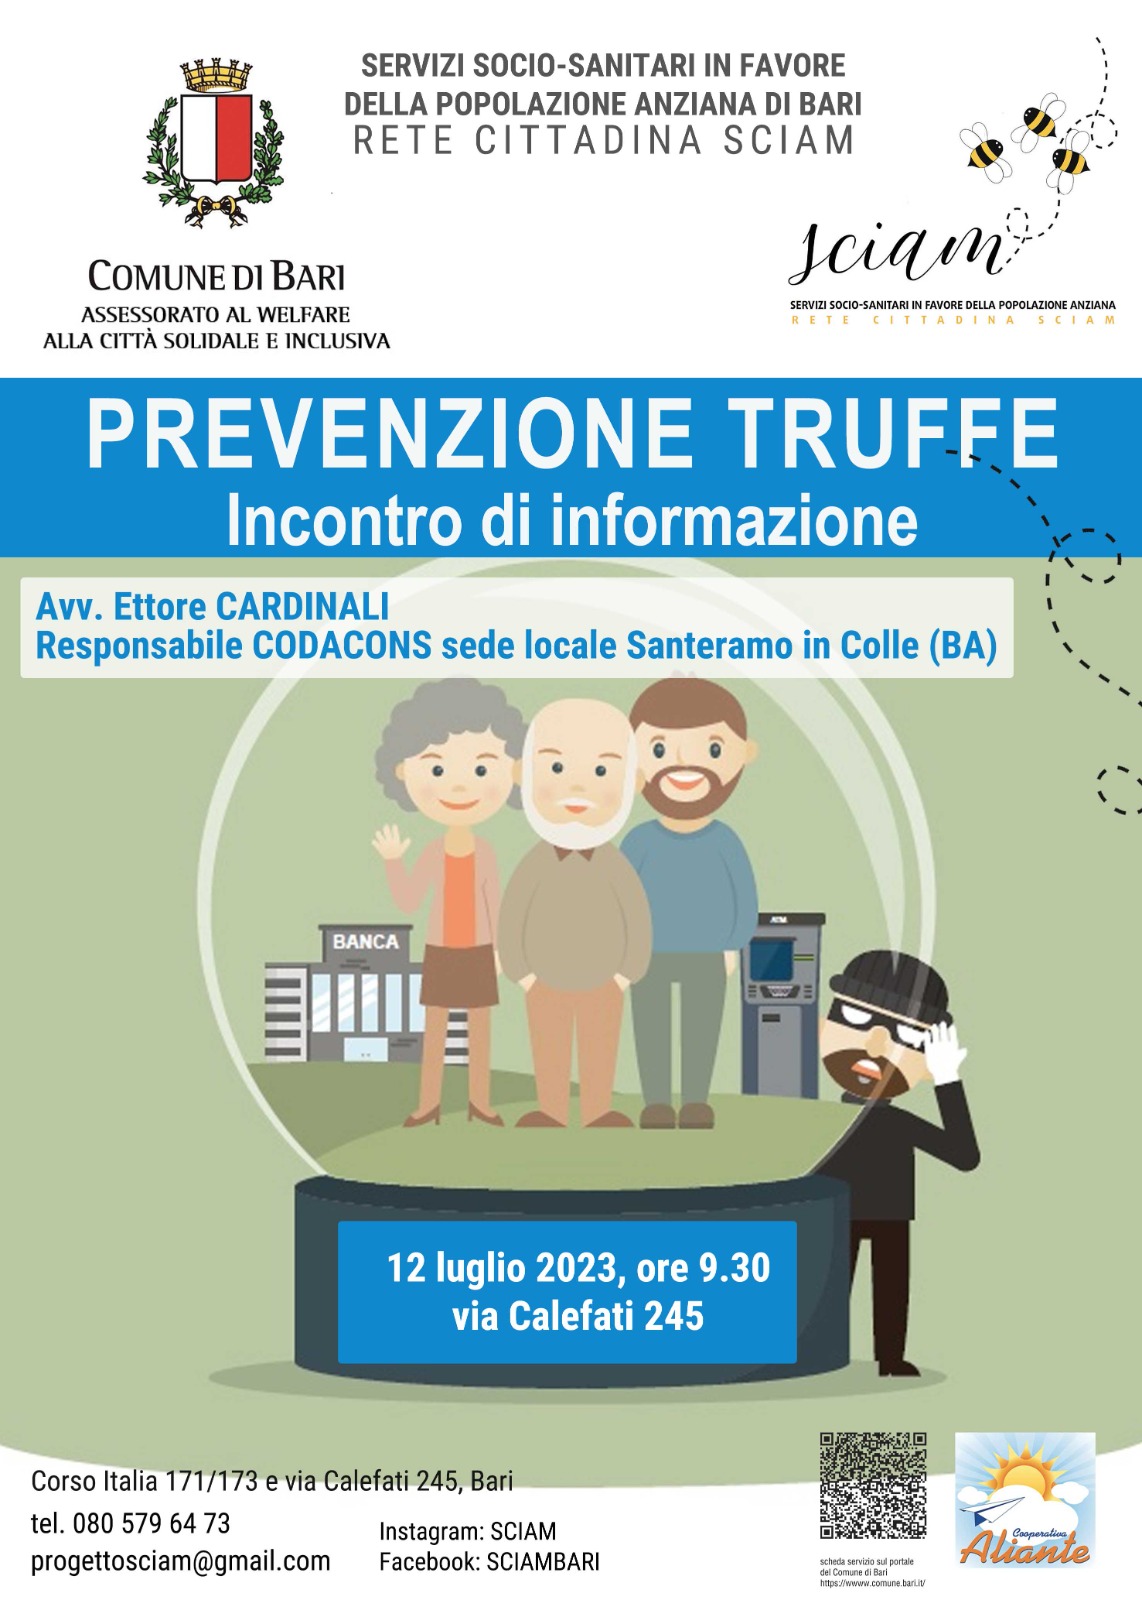 Prevenzione Truffe – Incontro di informazione  – SCIAM 12 Luglio 2023